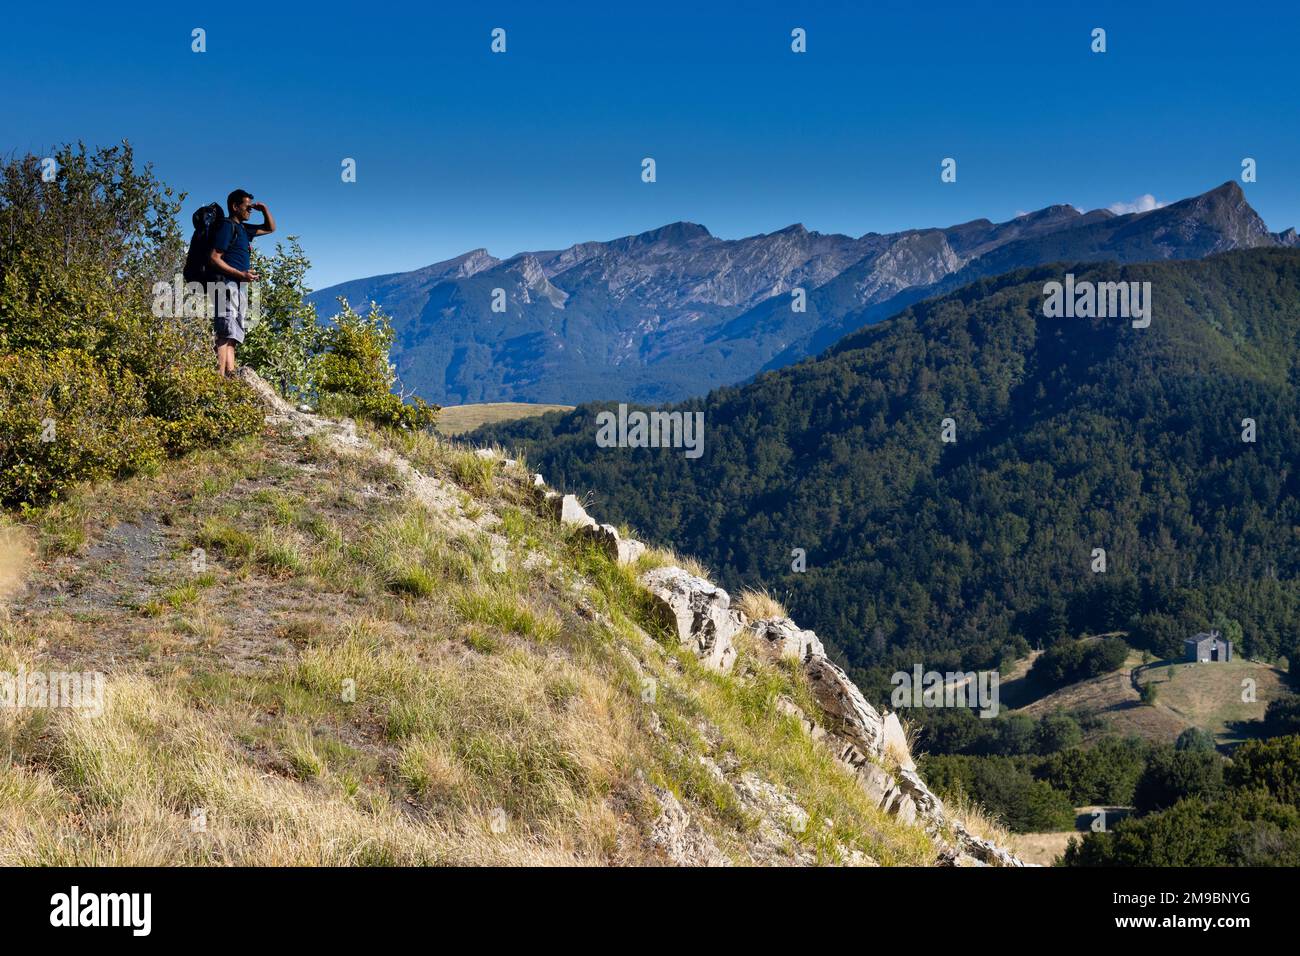 Paysage de montagne de Cirone Pass, parc Toscano Emiliano dans la province de Parme, Italie. Photo de haute qualité Banque D'Images